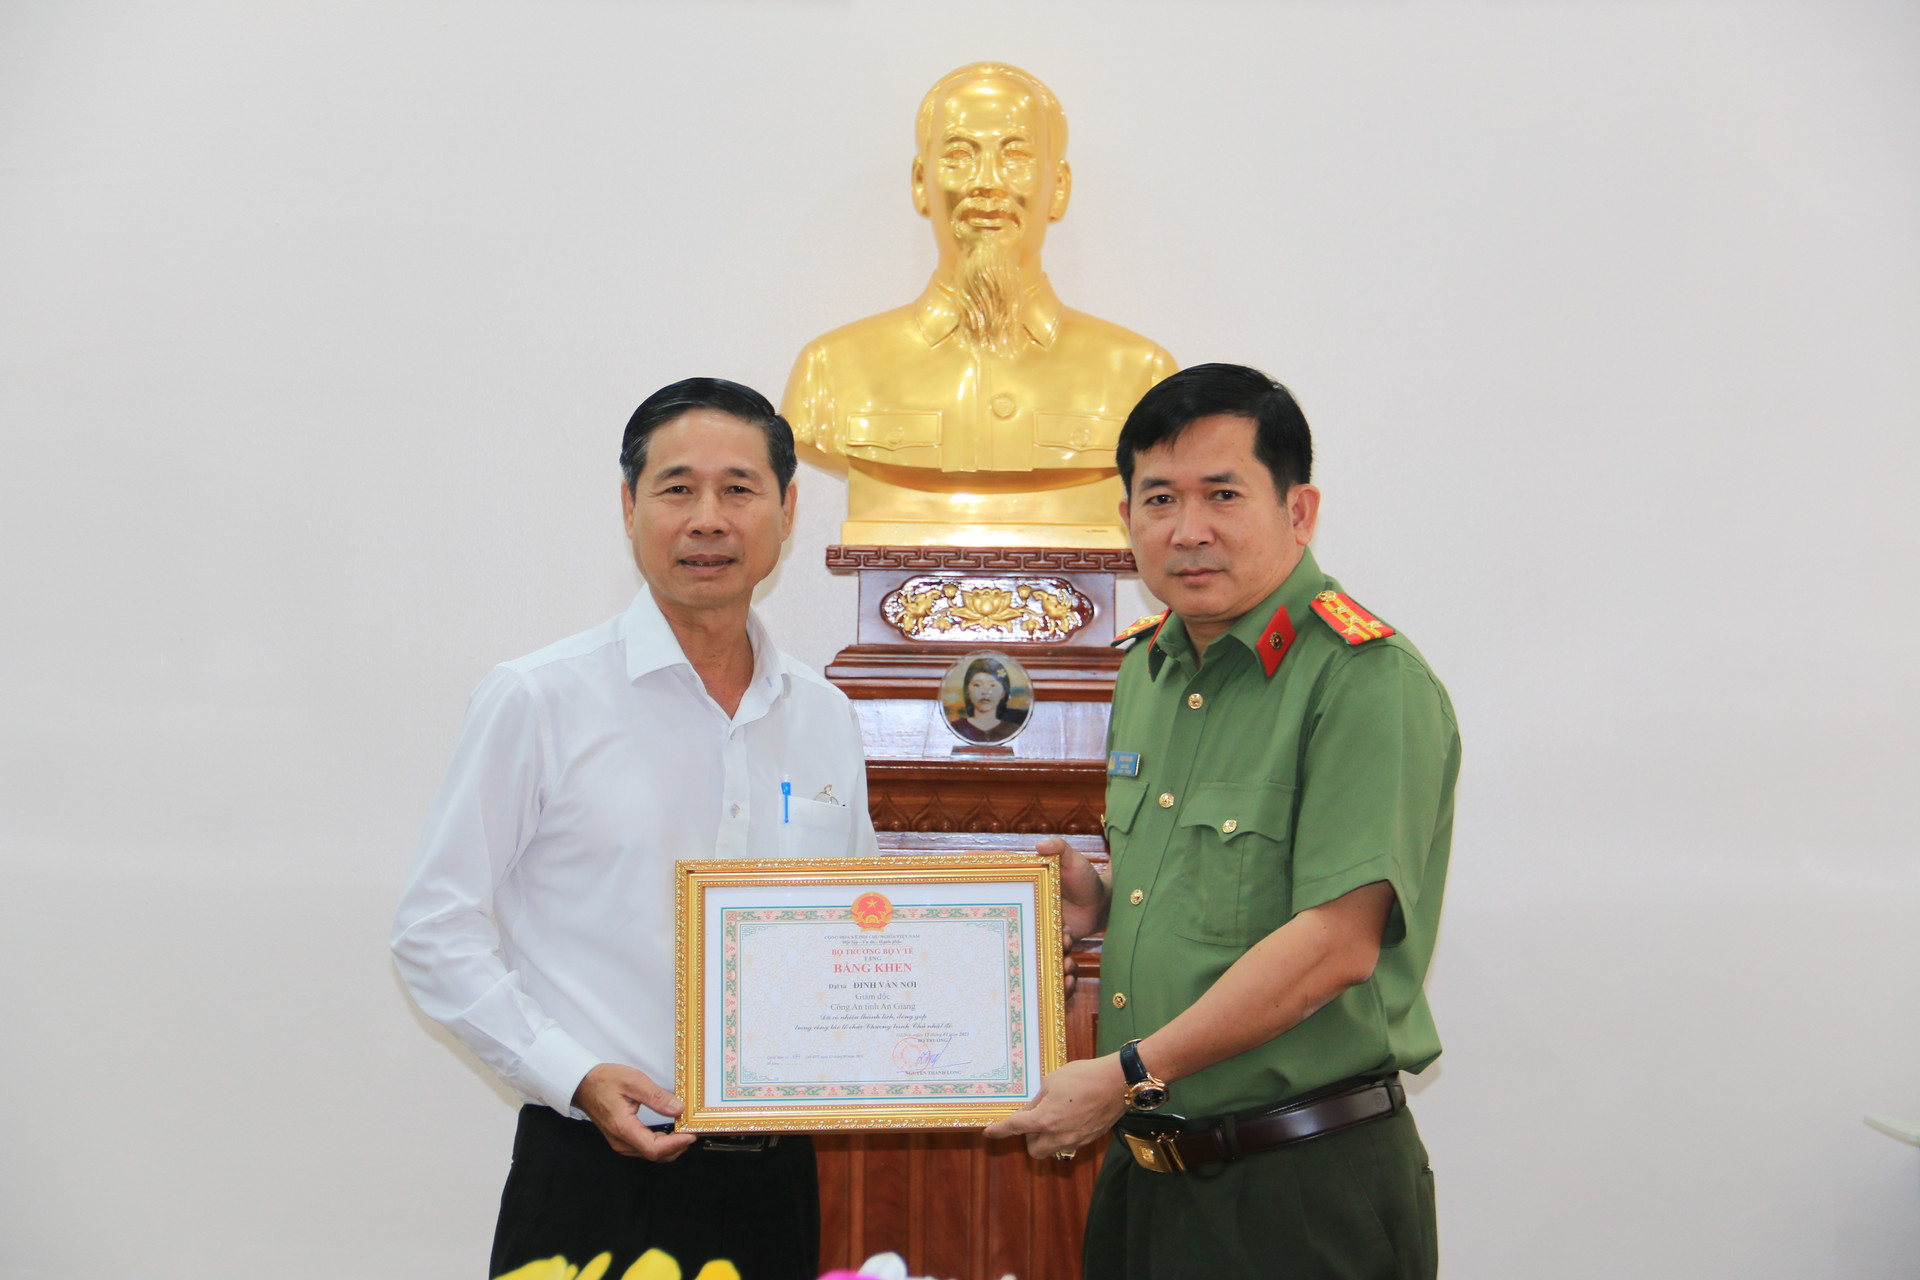  Đại tá Đinh Văn Nơi – Giám đốc Công an tỉnh An Giang nhận bằng khen của Bộ trưởng Bô Y tế